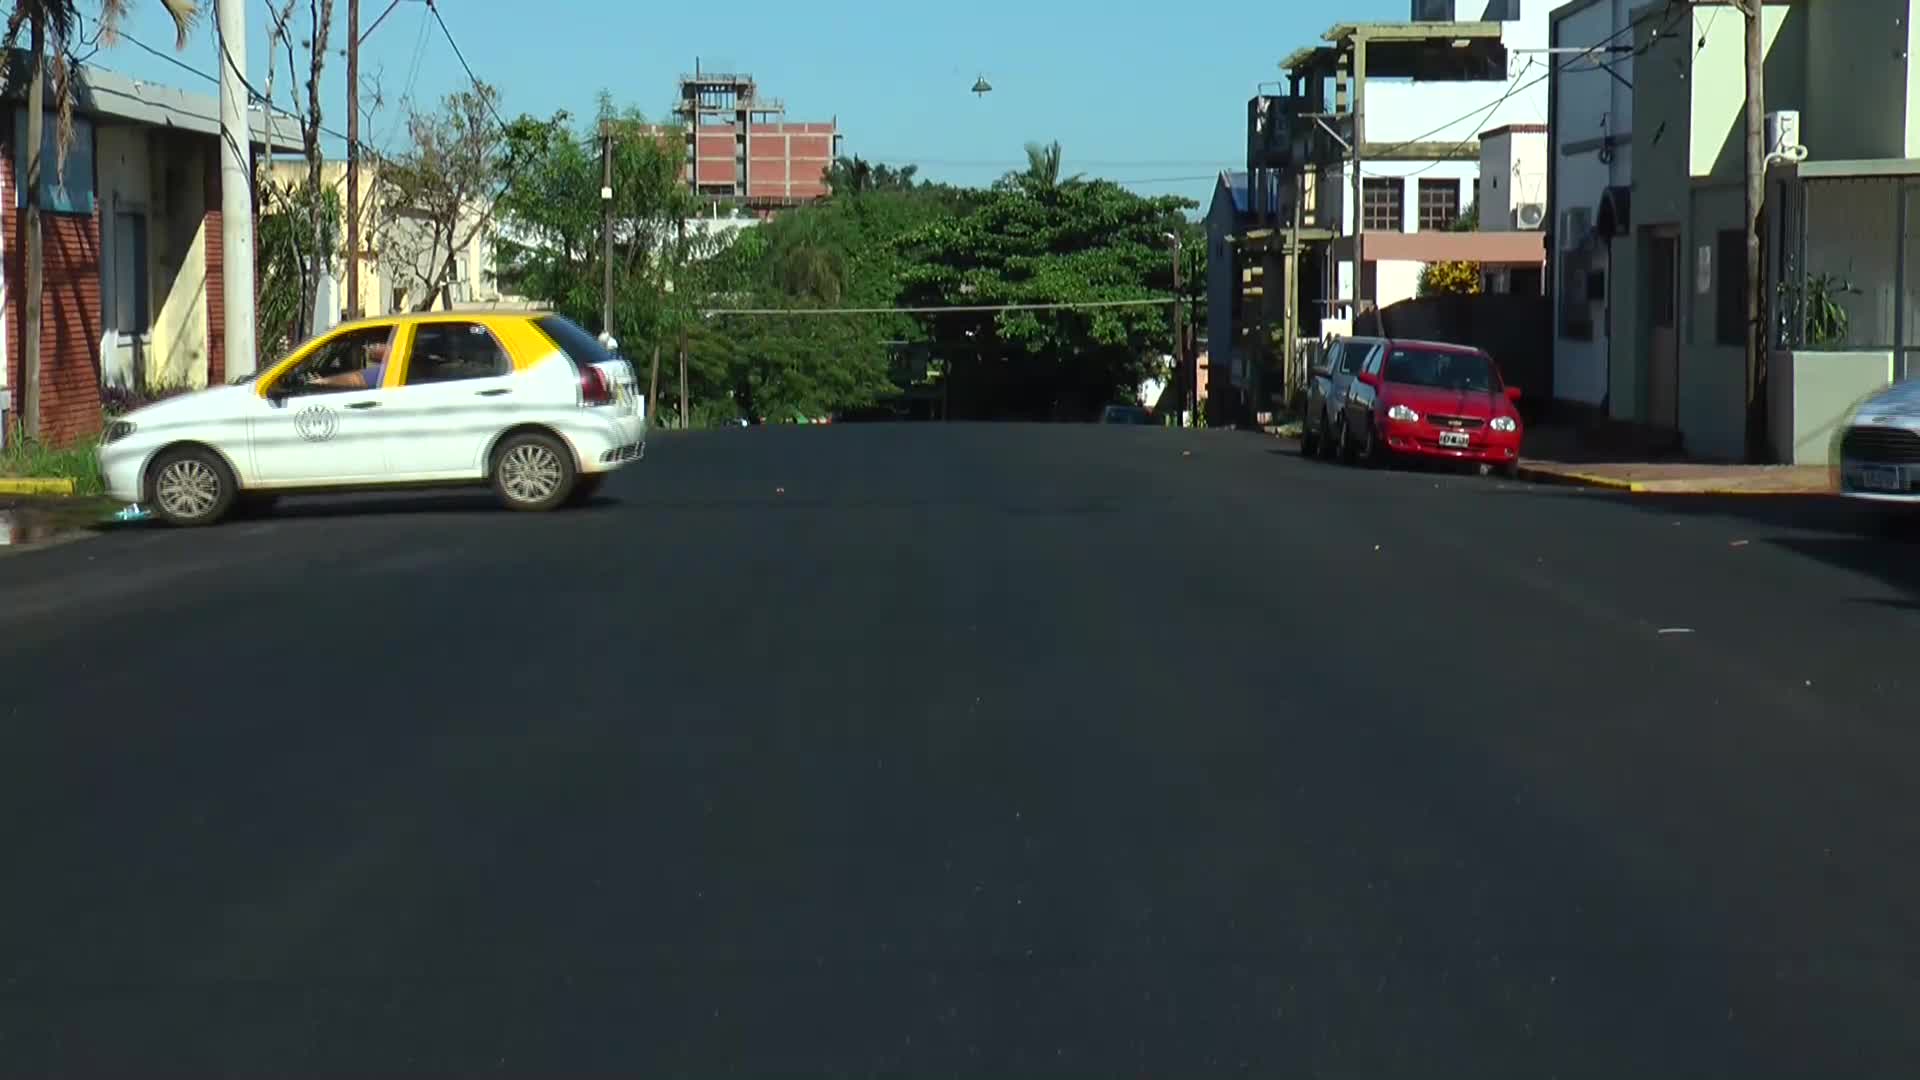 Plan avenidas de Vialidad Provincial: la calle Santa Fe de Posadas fue repavimentada a nuevo